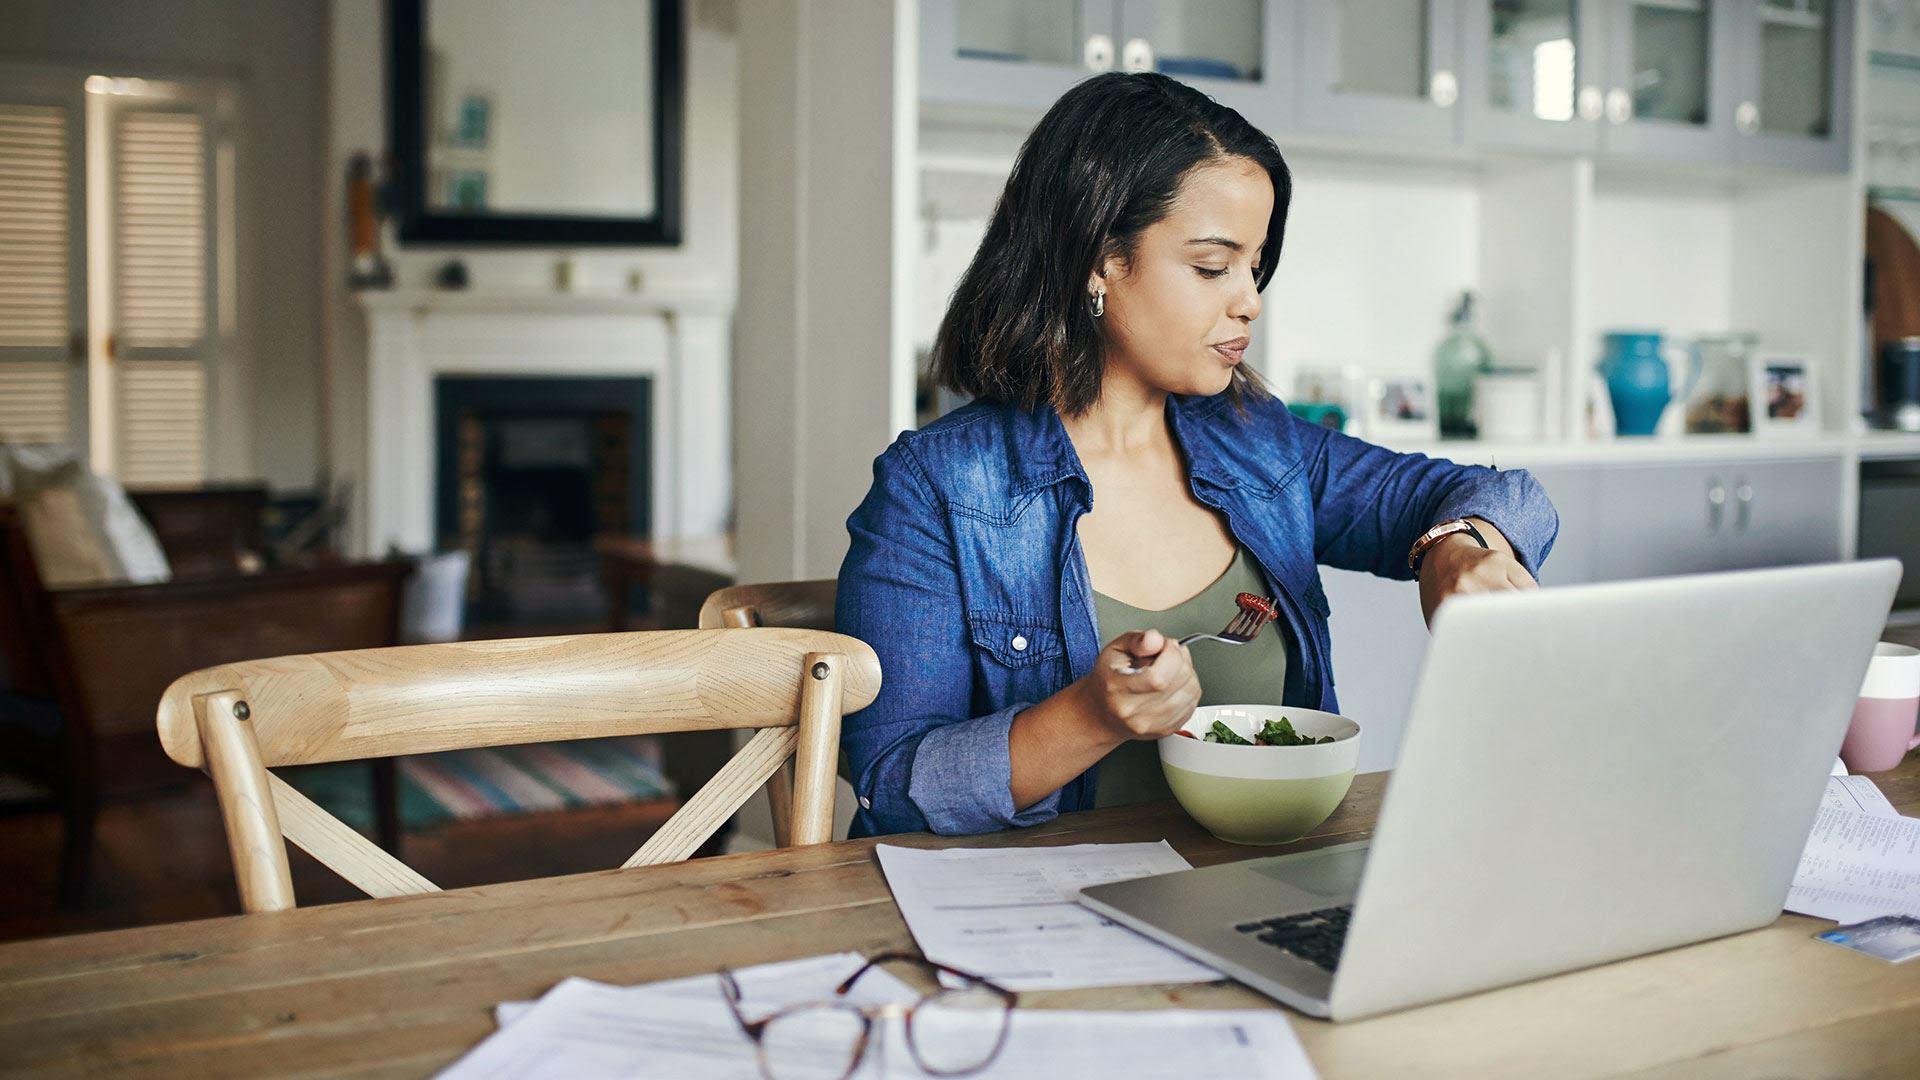 Latinsk mörkhårig kvinna 30-40 års åldern med jeansskjorta och grönt linne, äter en sallad framför datorn samtidigt som hon tittar på klockan